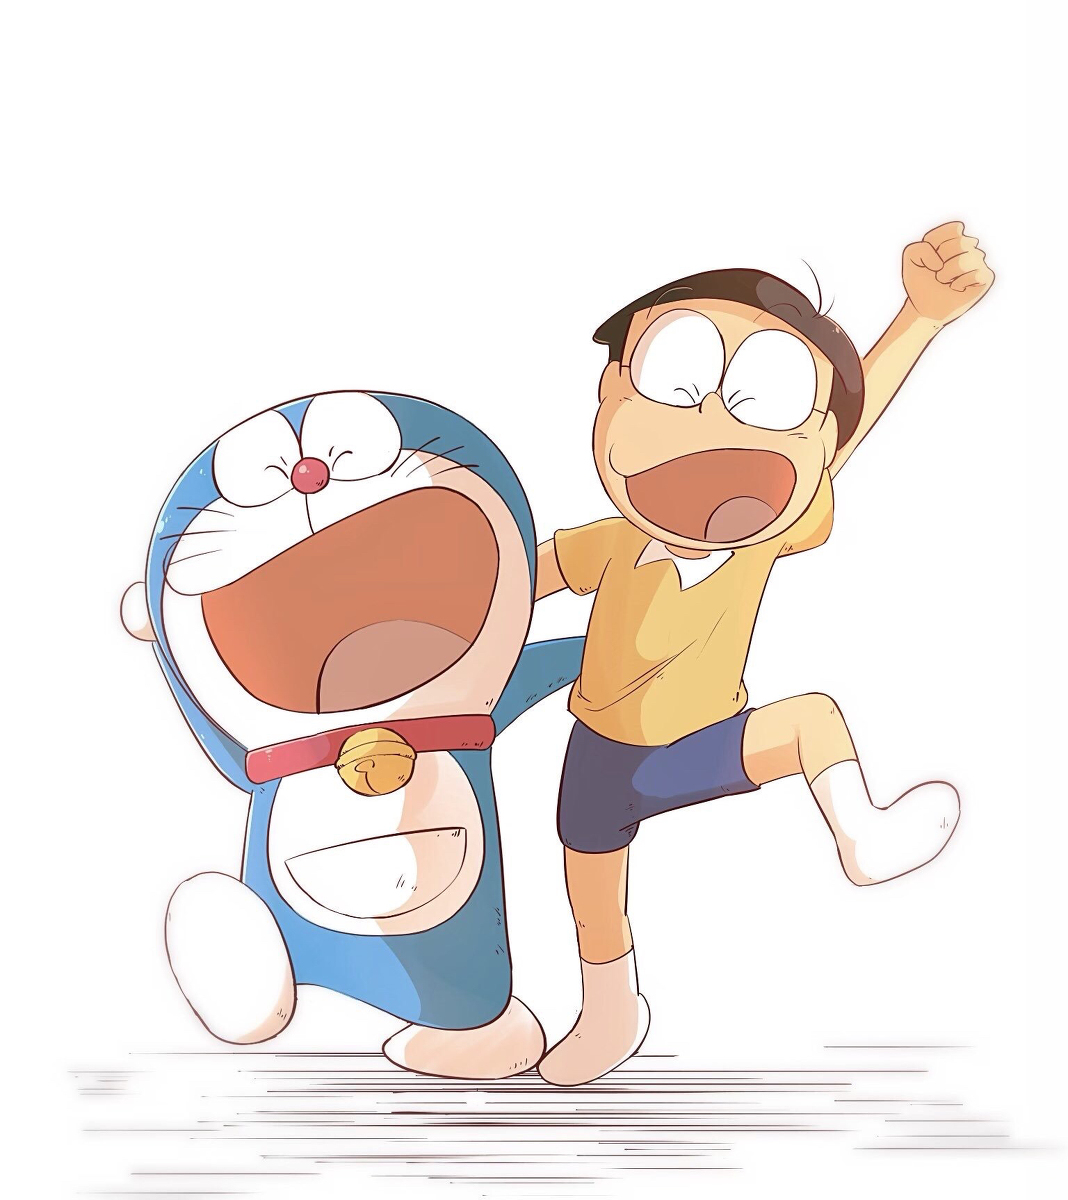 Dạy vẽ Doraemon 7 bước vẽ nhanh dễ hiểu để tạo thành bức tranh đẹp   Classic Shop  Phòng Tranh  Cá Cảnh Phước Sang